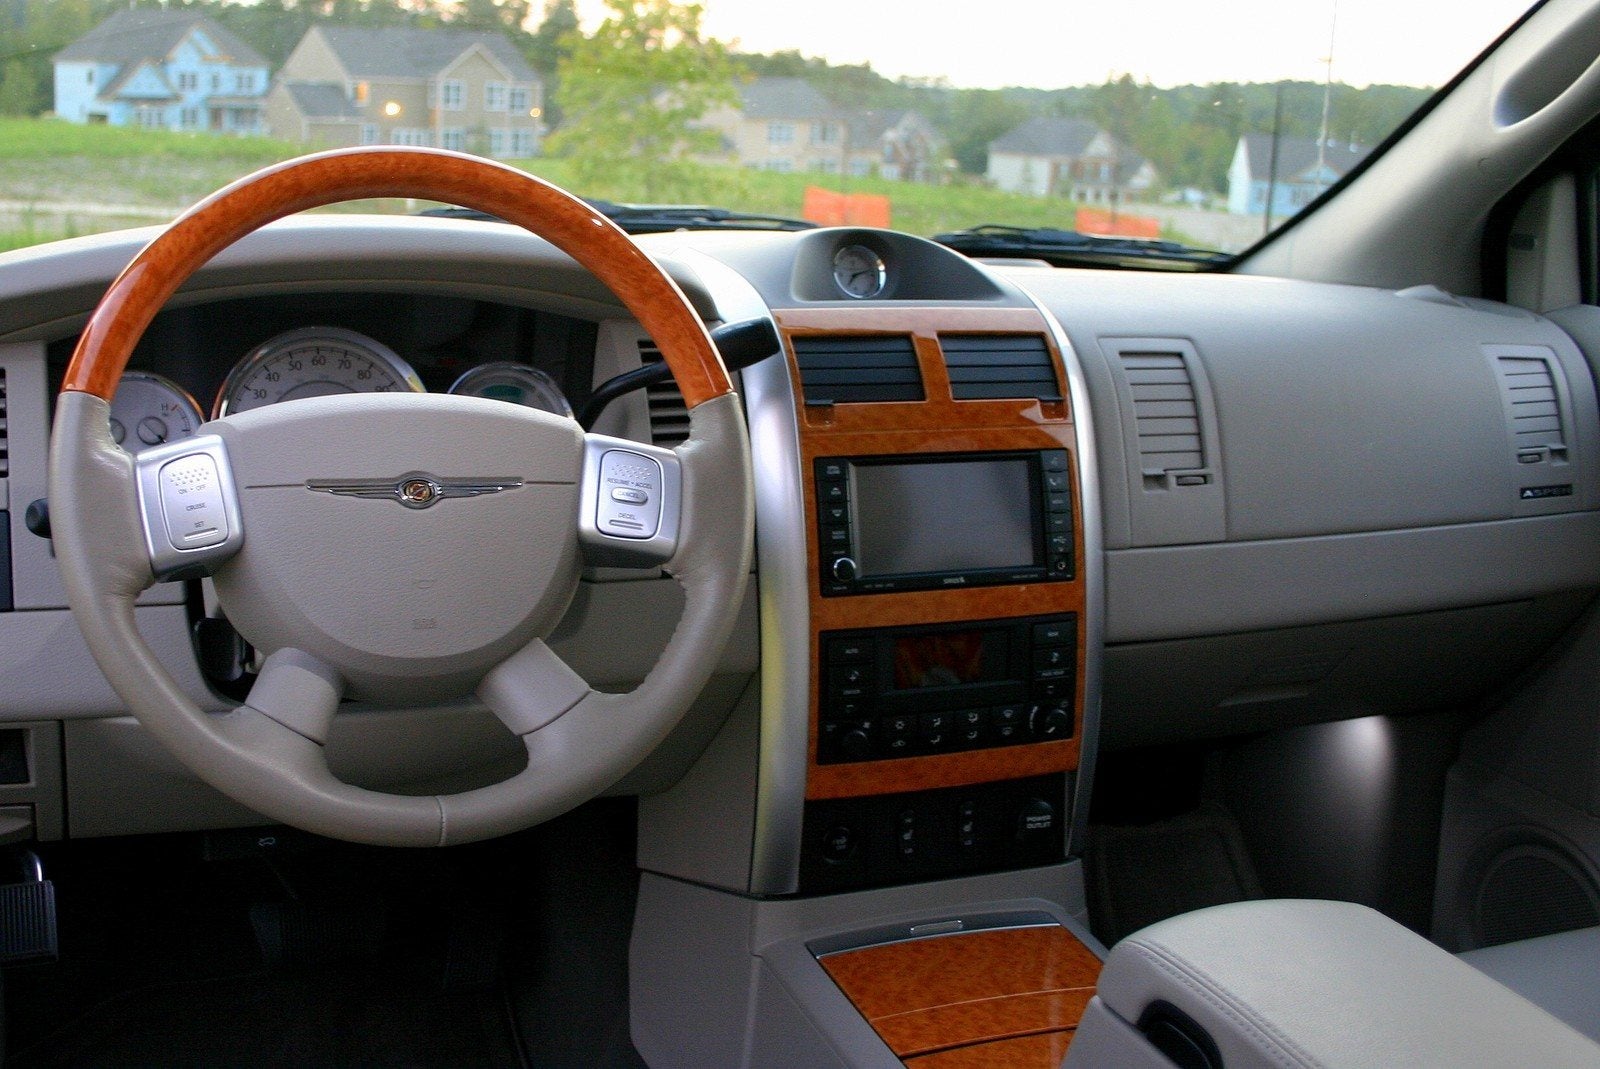 2009 Chrysler Aspen Hybrid Review